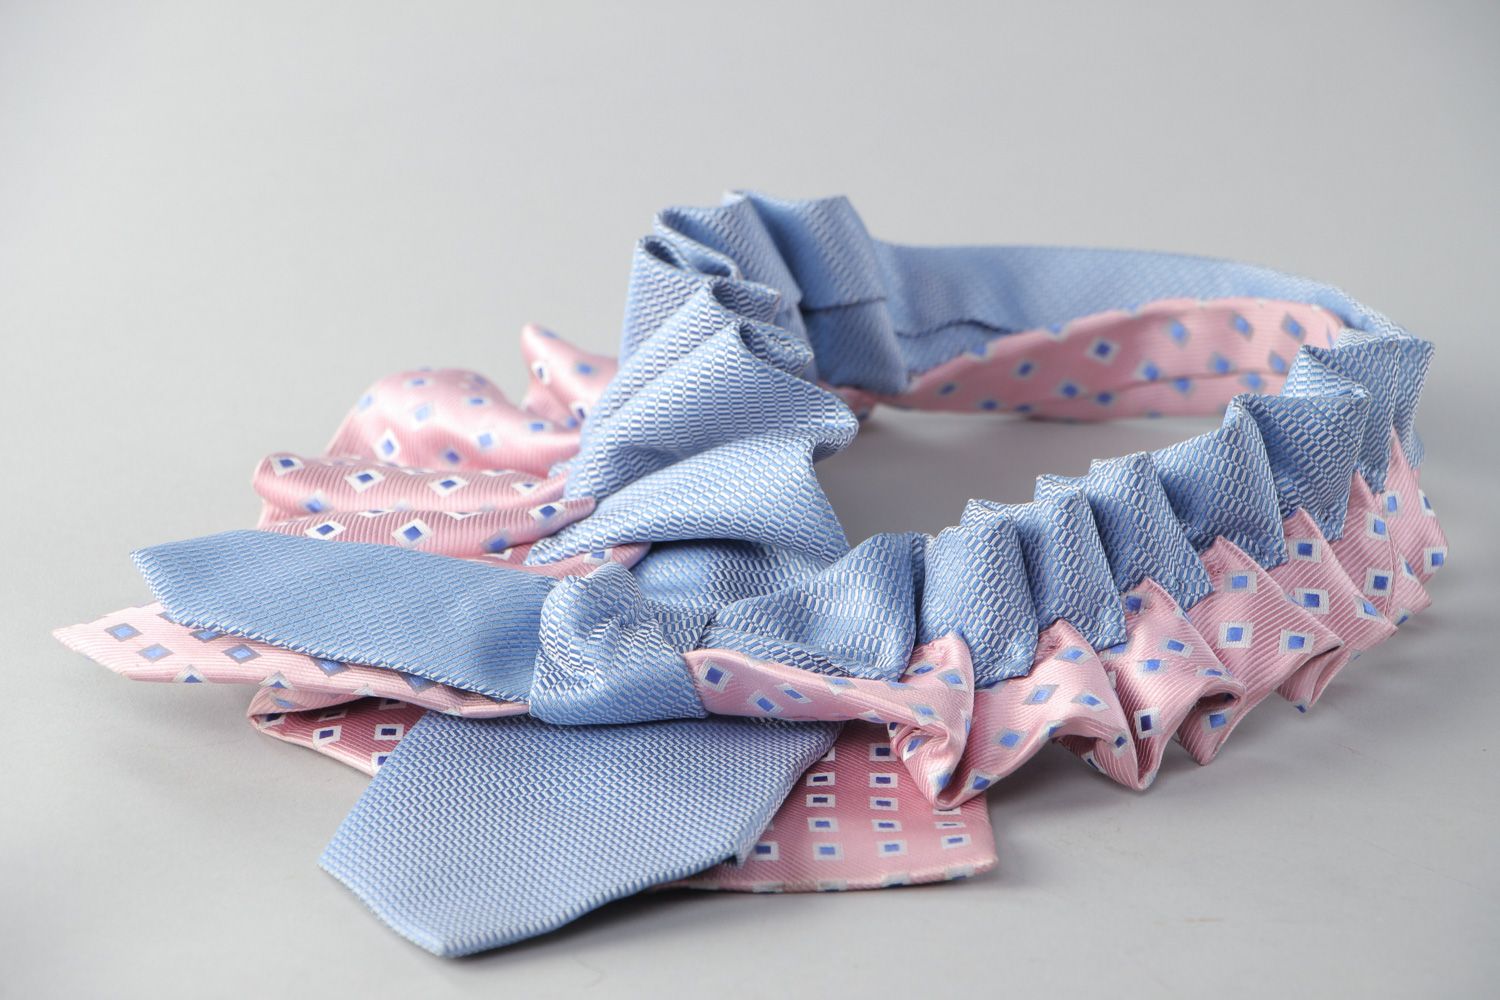 Handmade Collier aus Stoff in Form von Kragen hellblau und rosafarbig wunderbar foto 3